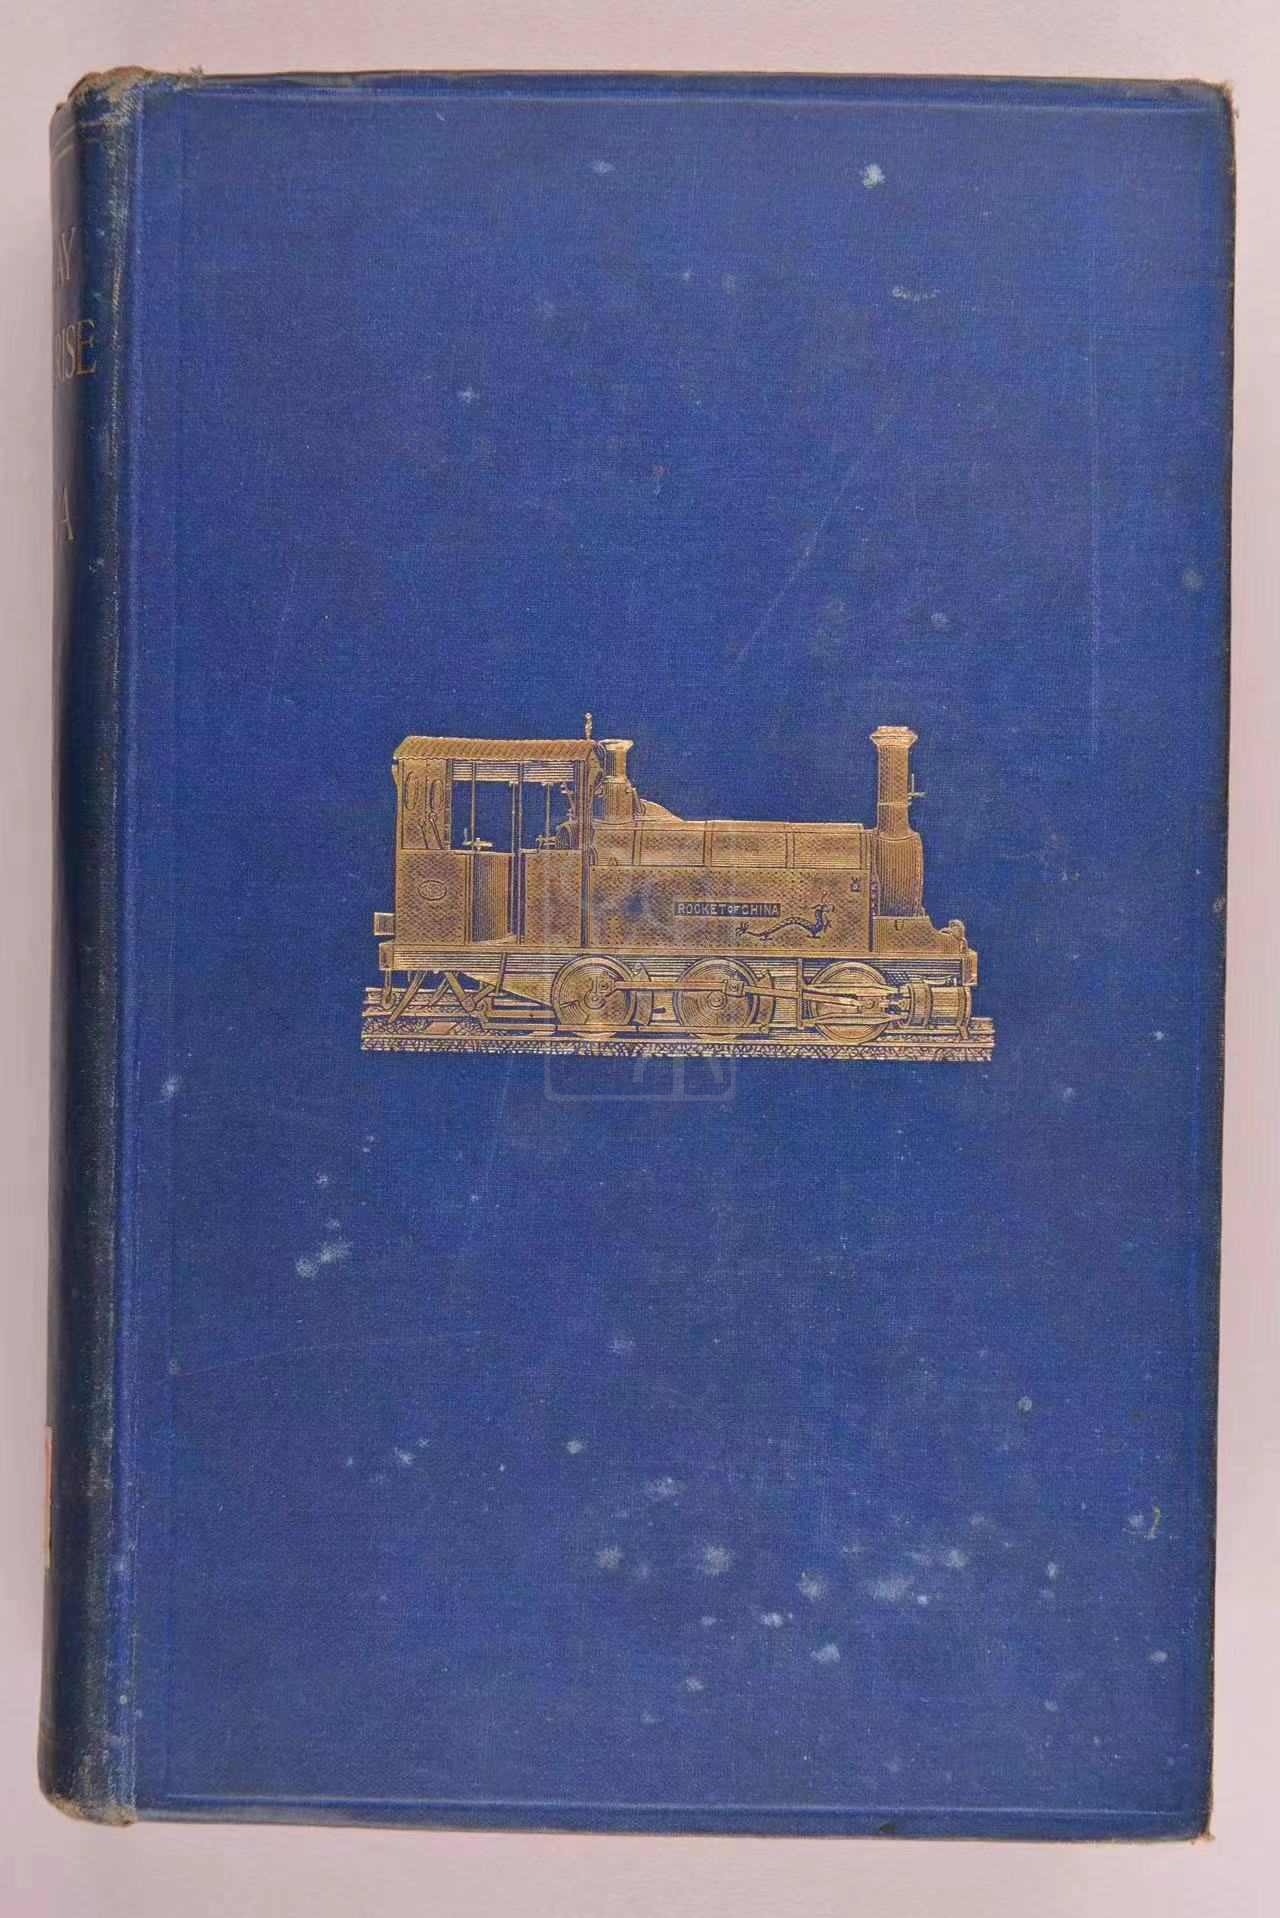 1908年版《中国的铁道事业》（Railway Enterprise in China）